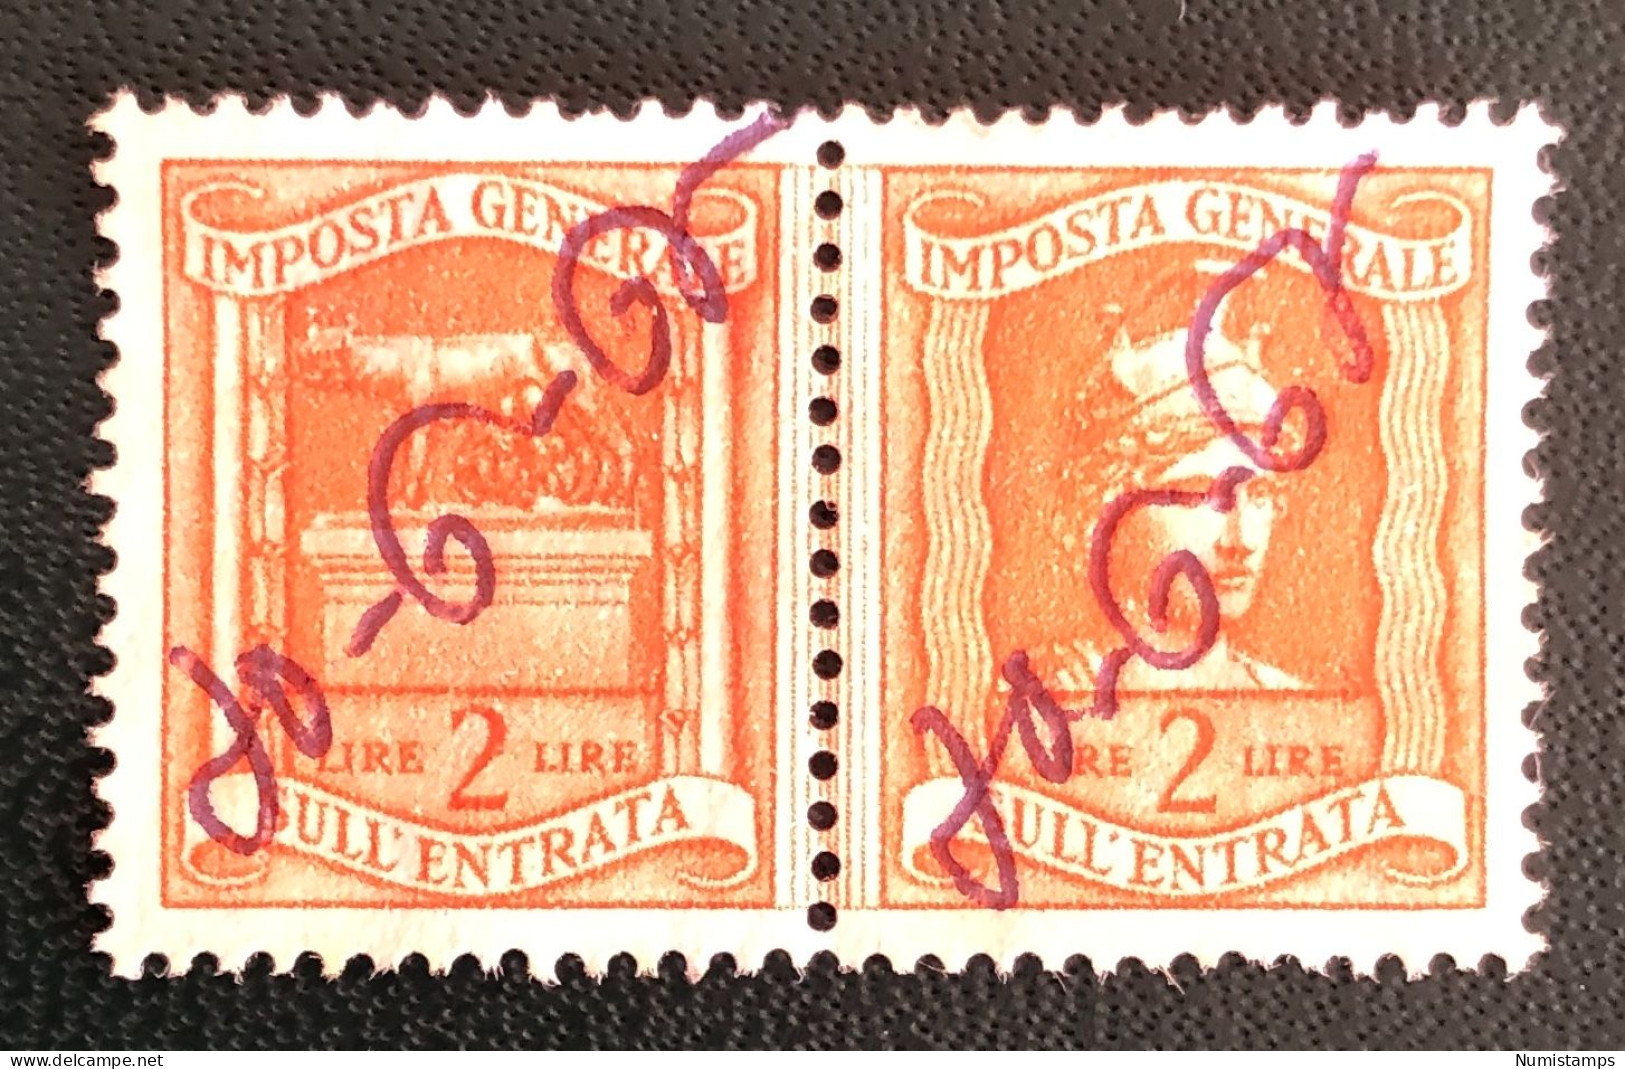 Imposta Generale Sull'entrata - Lire 2 - Revenue Stamps